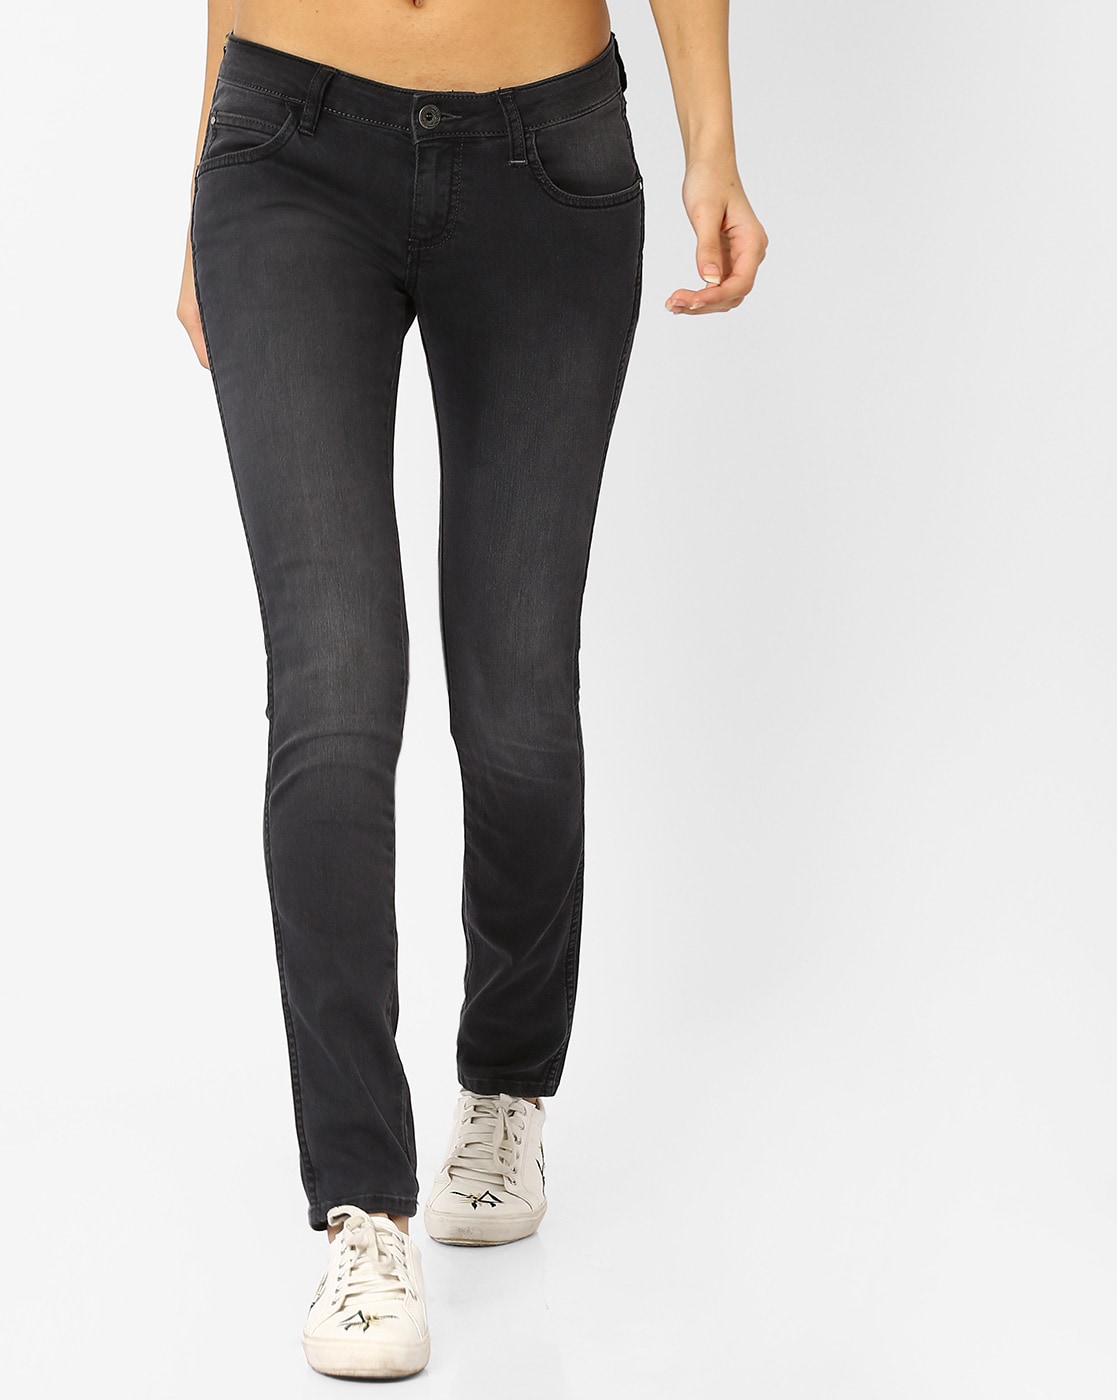 black wrangler jeans womens